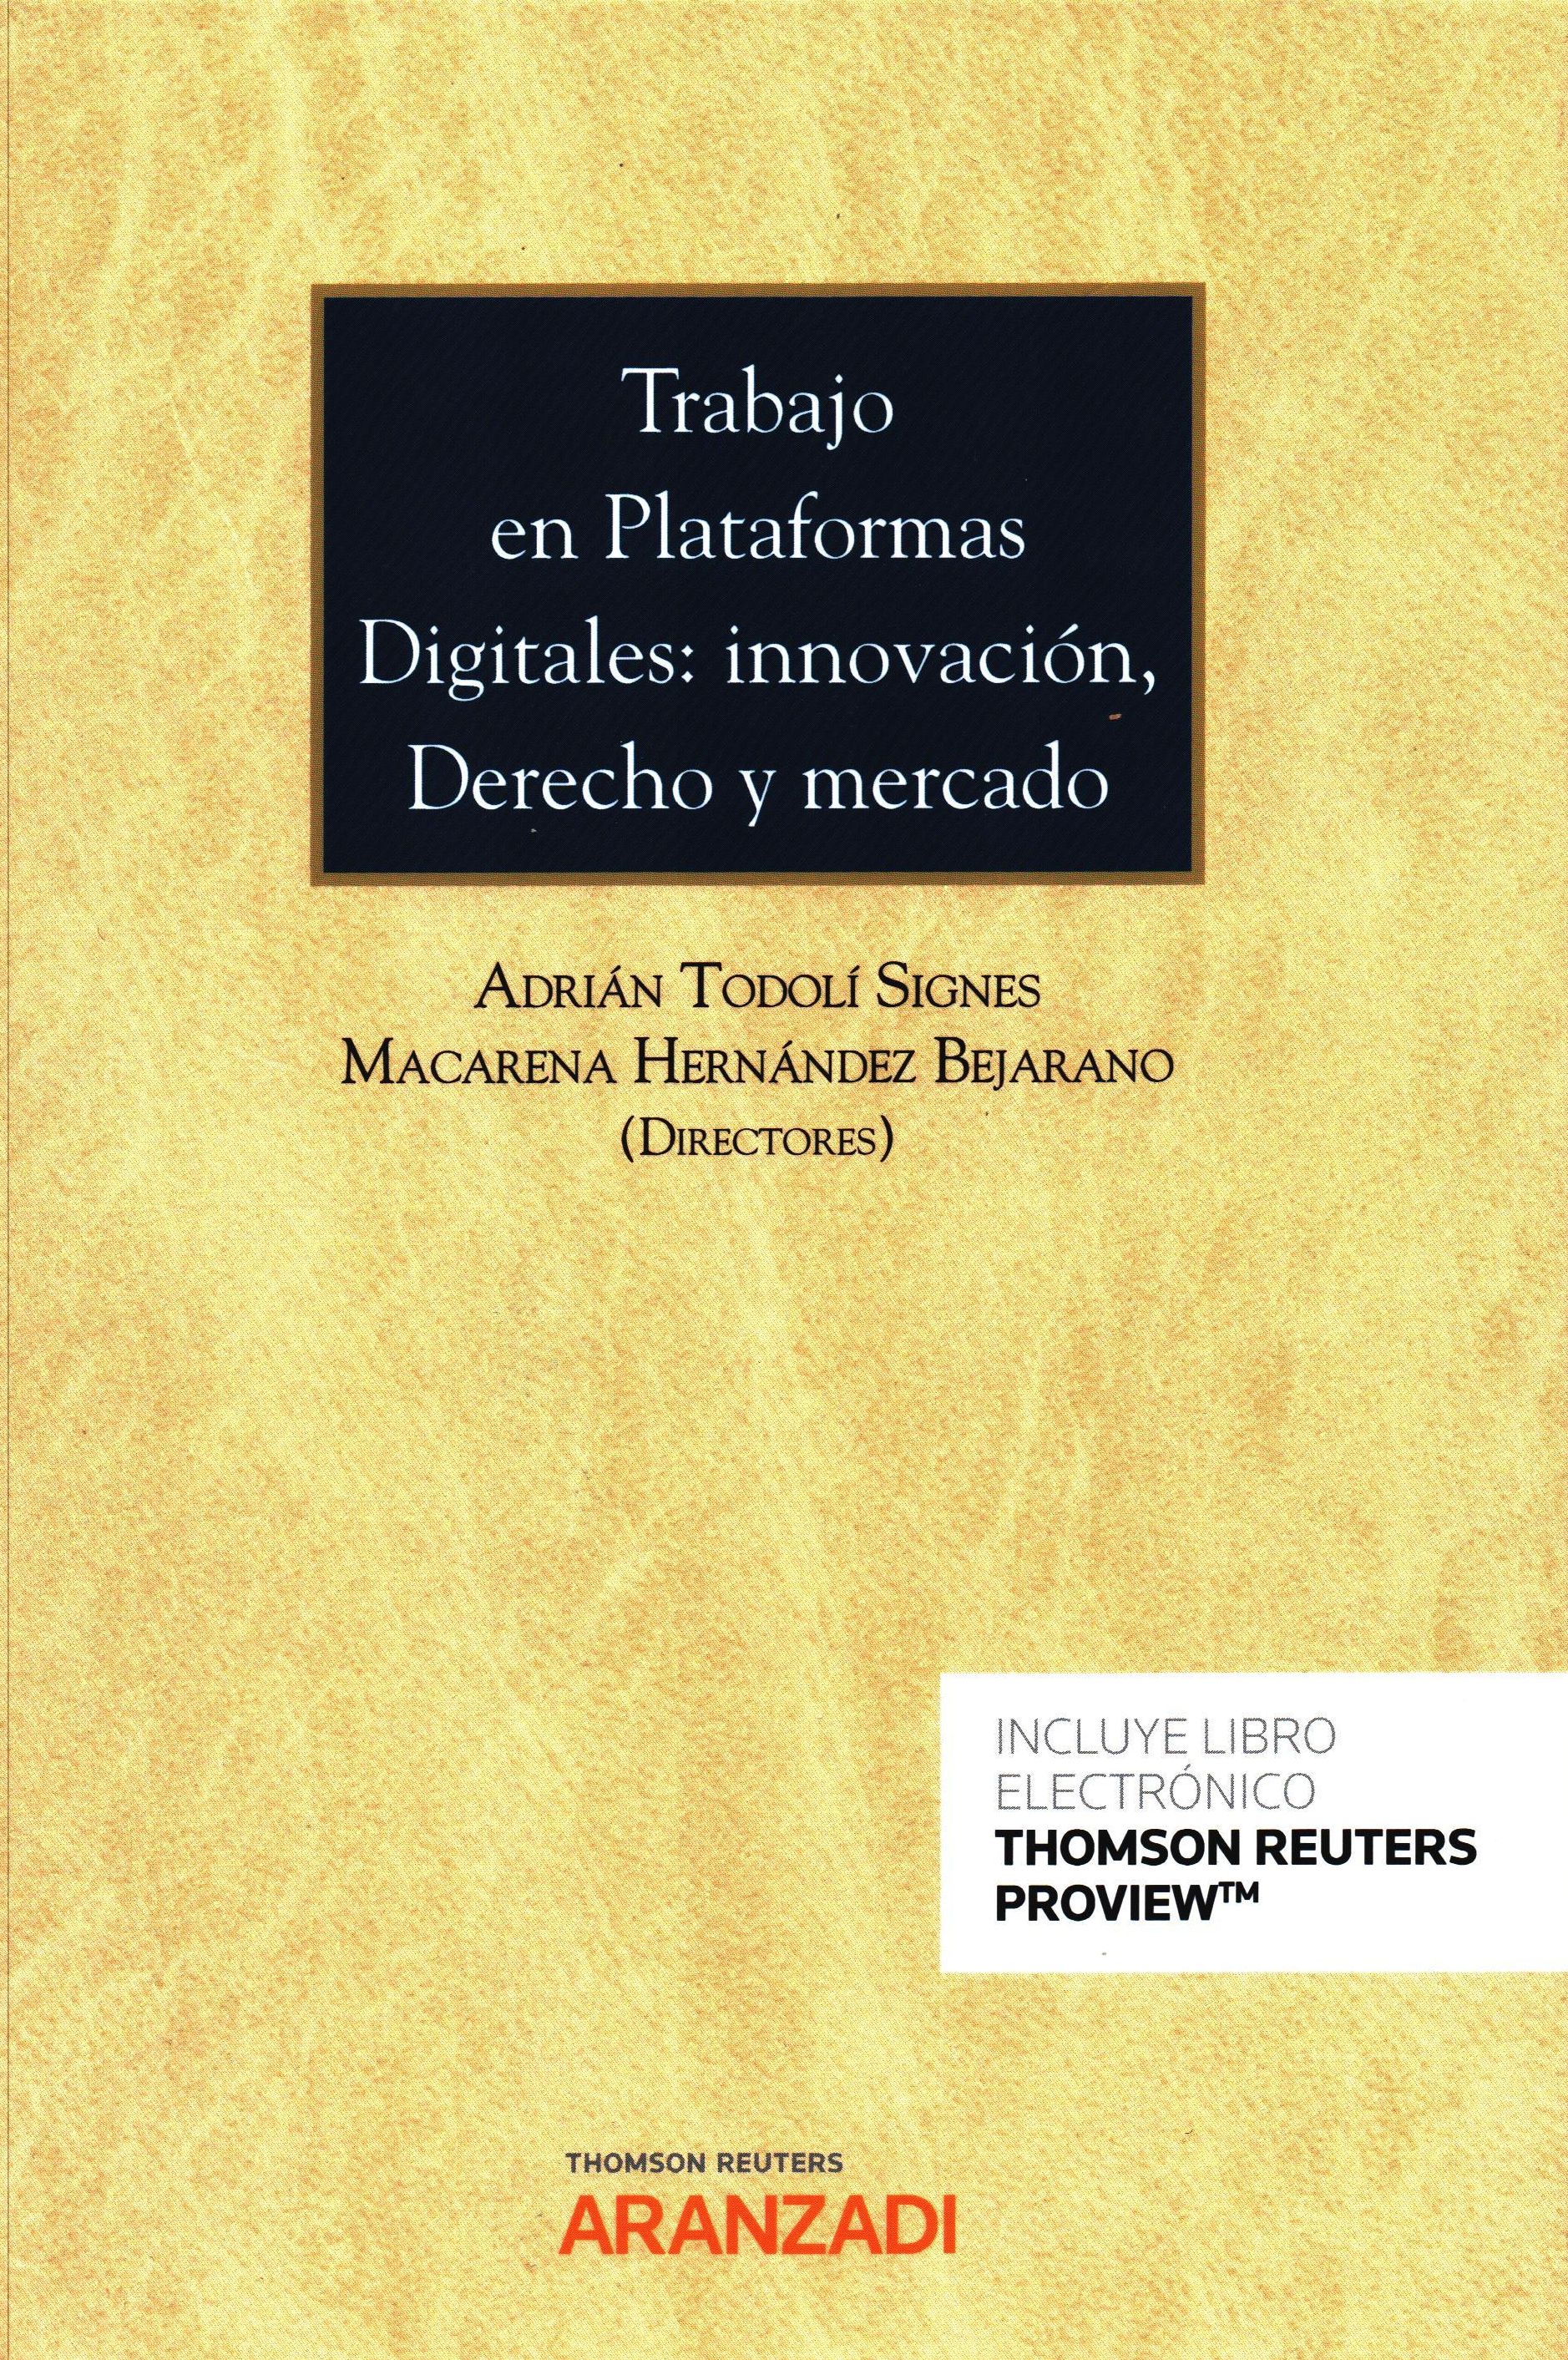 Imagen de portada del libro Trabajo en plataformas digitales: innovación, derecho y mercado